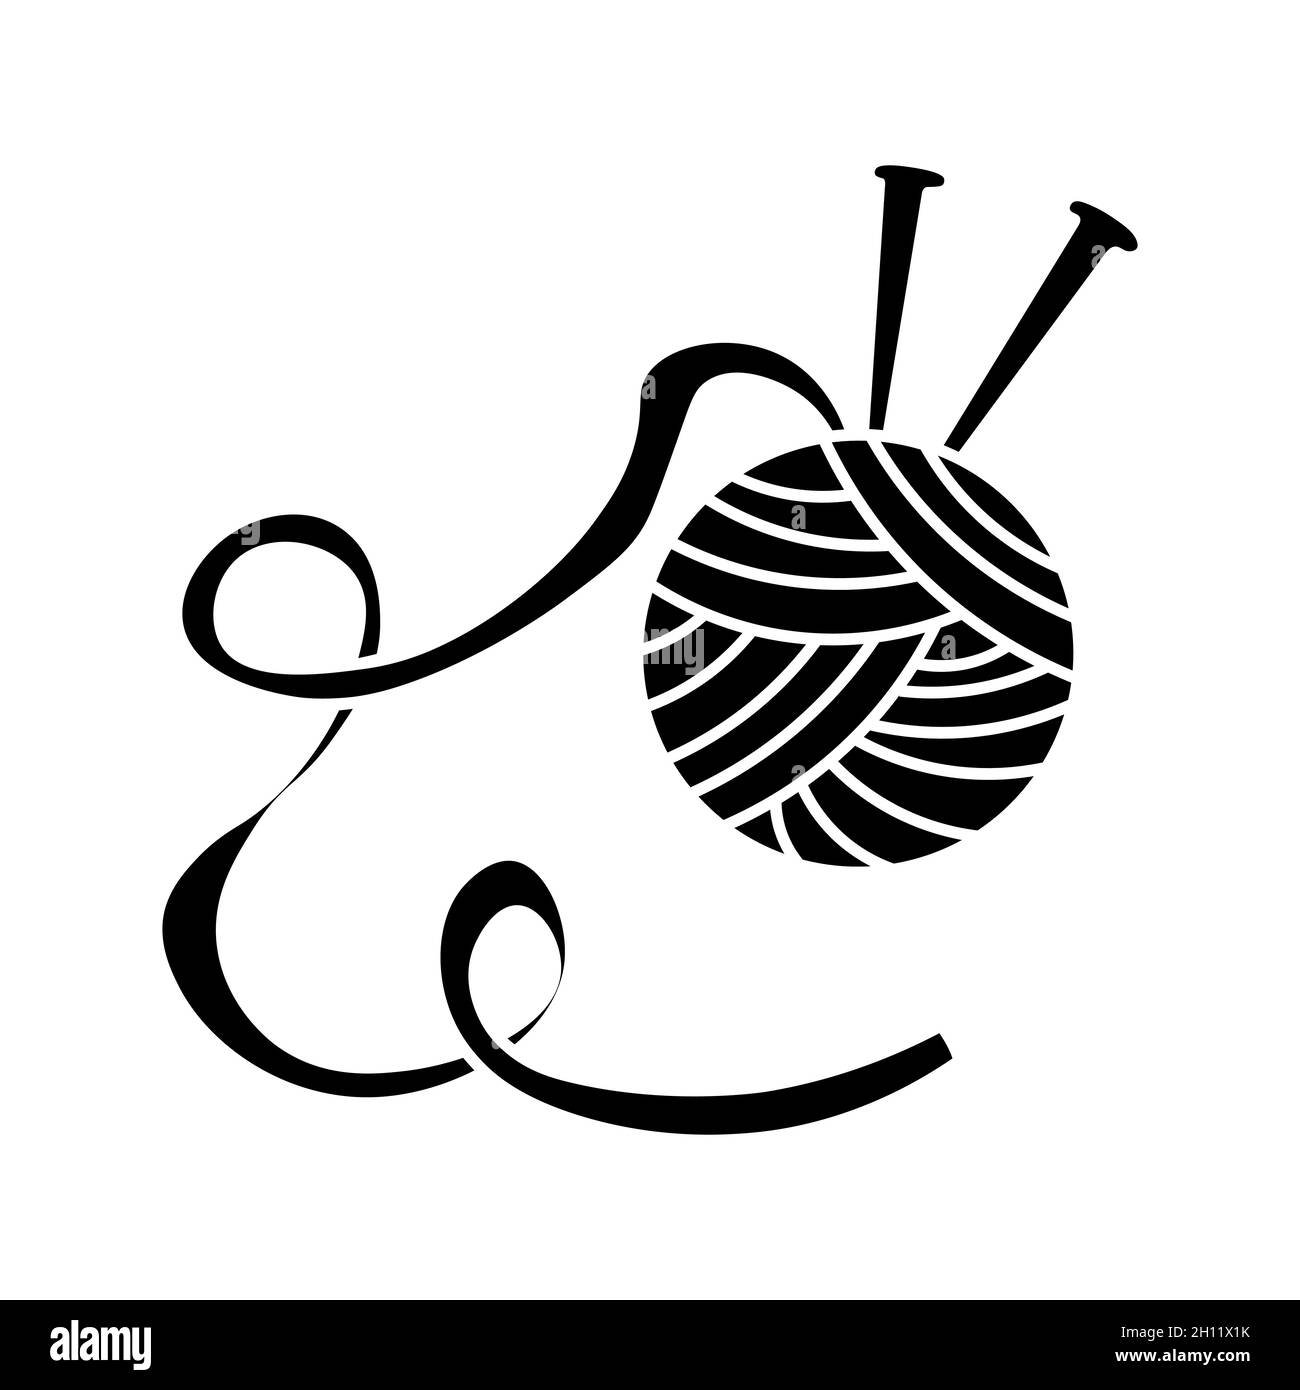 Symbolvektor für Garnspule auf weißem Hintergrund. Garn-Logo für  handgefertigte Handwerker. Einfaches schwarz-weißes Schild. Gestricktes  Häkelemblem. Handgemachte Wolle s Stock-Vektorgrafik - Alamy